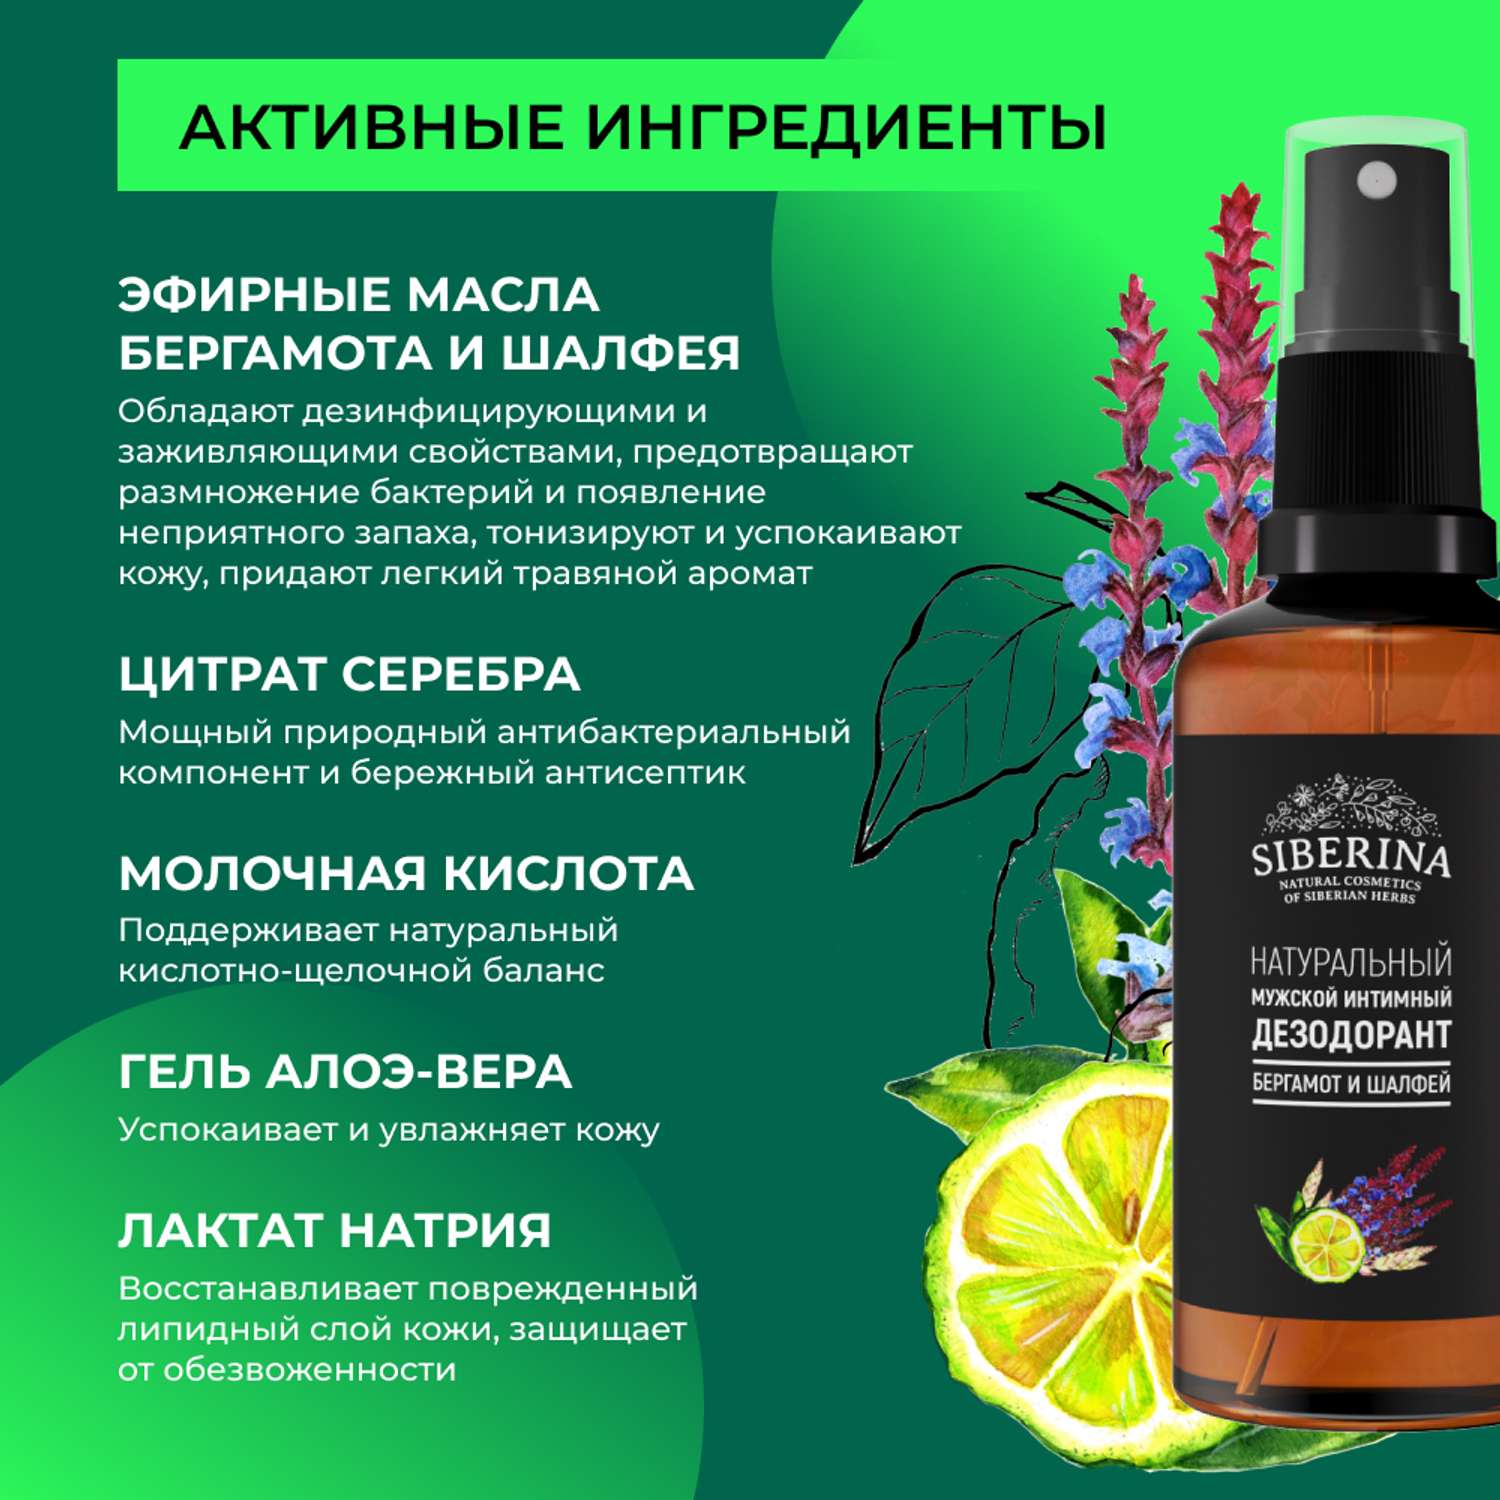 Интимный дезодорант Siberina натуральный «Бергамот и шалфей» мужской 50 мл - фото 4